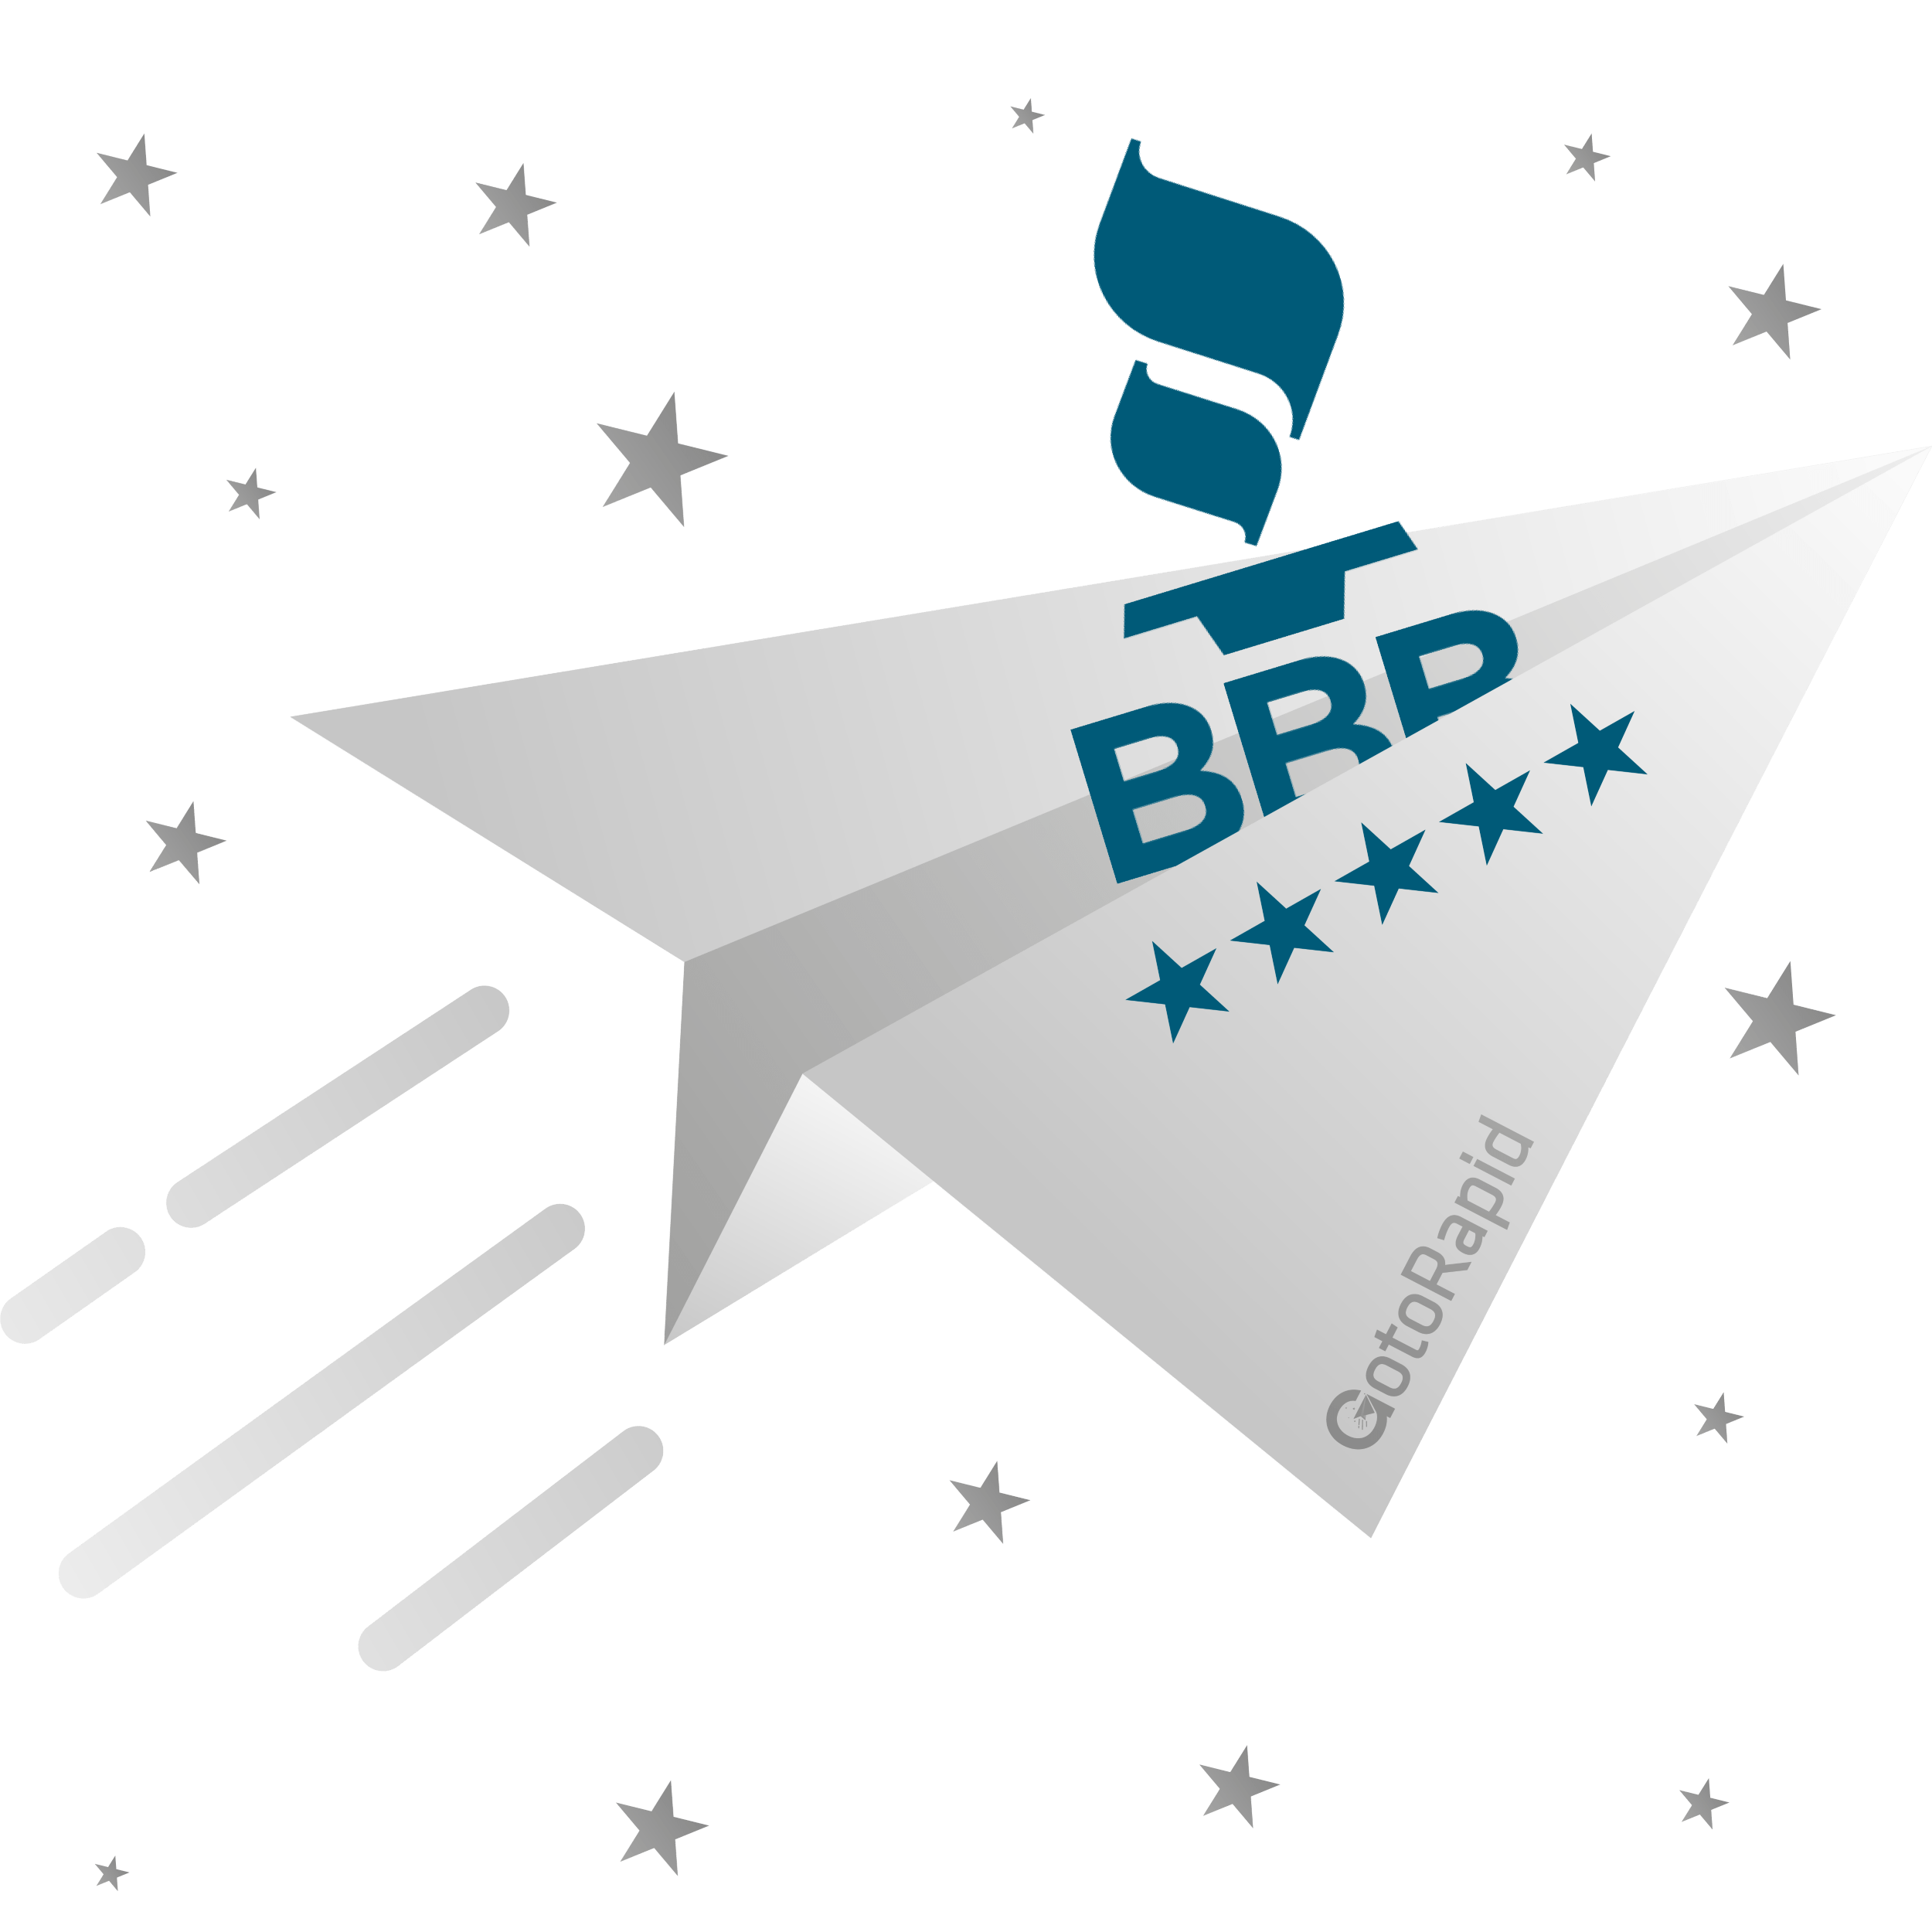 Buy BBB Reviews - Get 100% Verified Better Business Bureau...